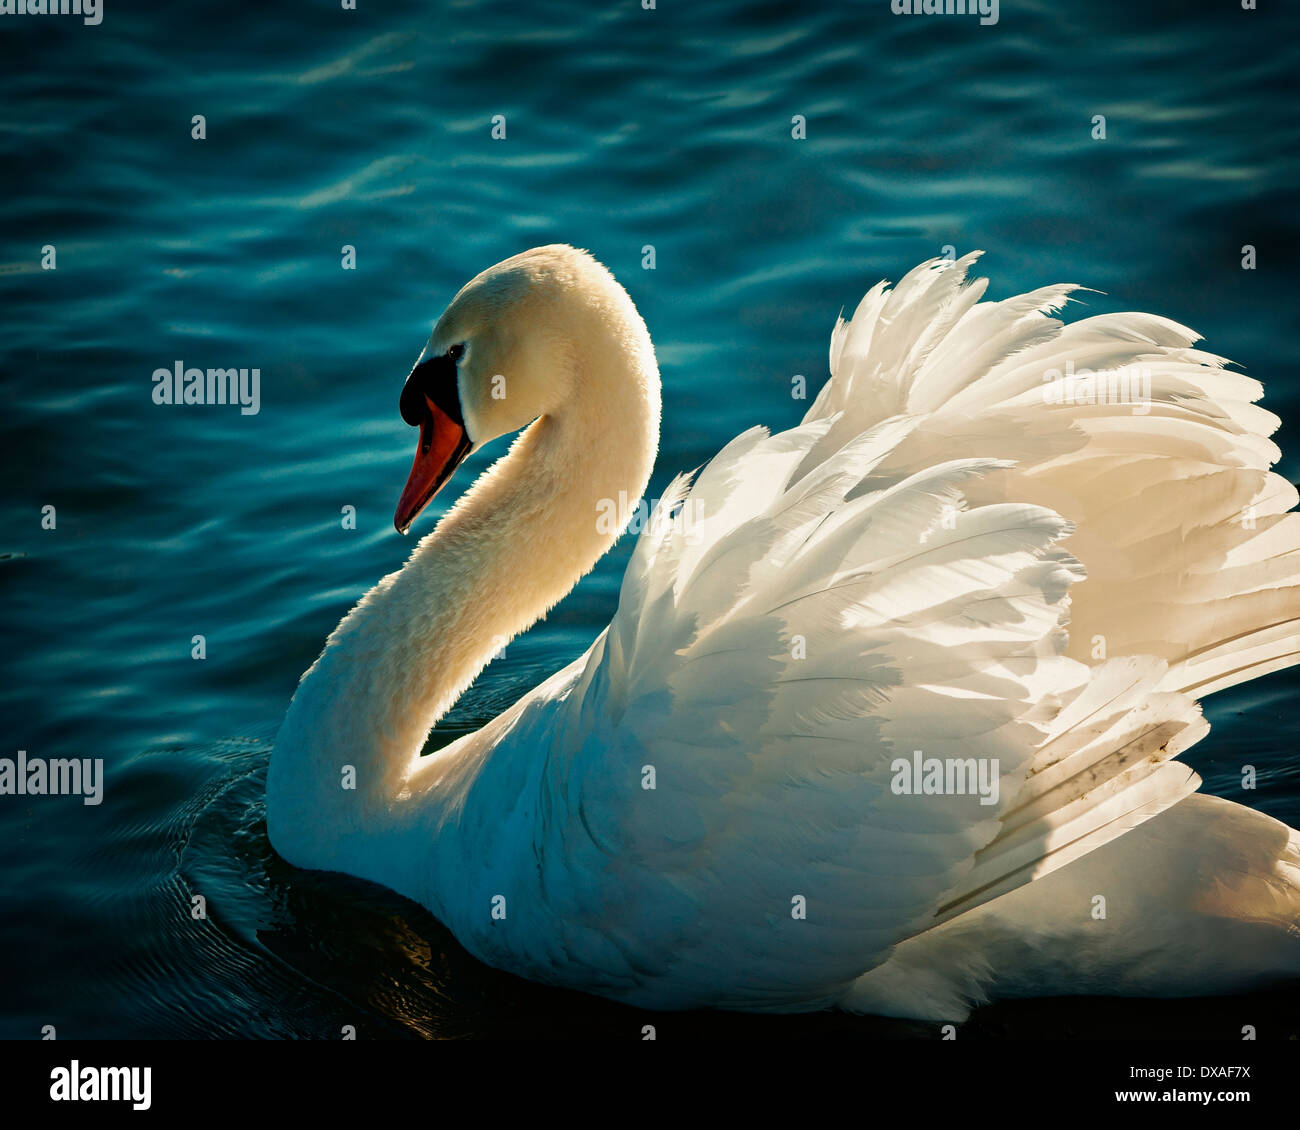 WILDLIFE: White Swan Stock Photo